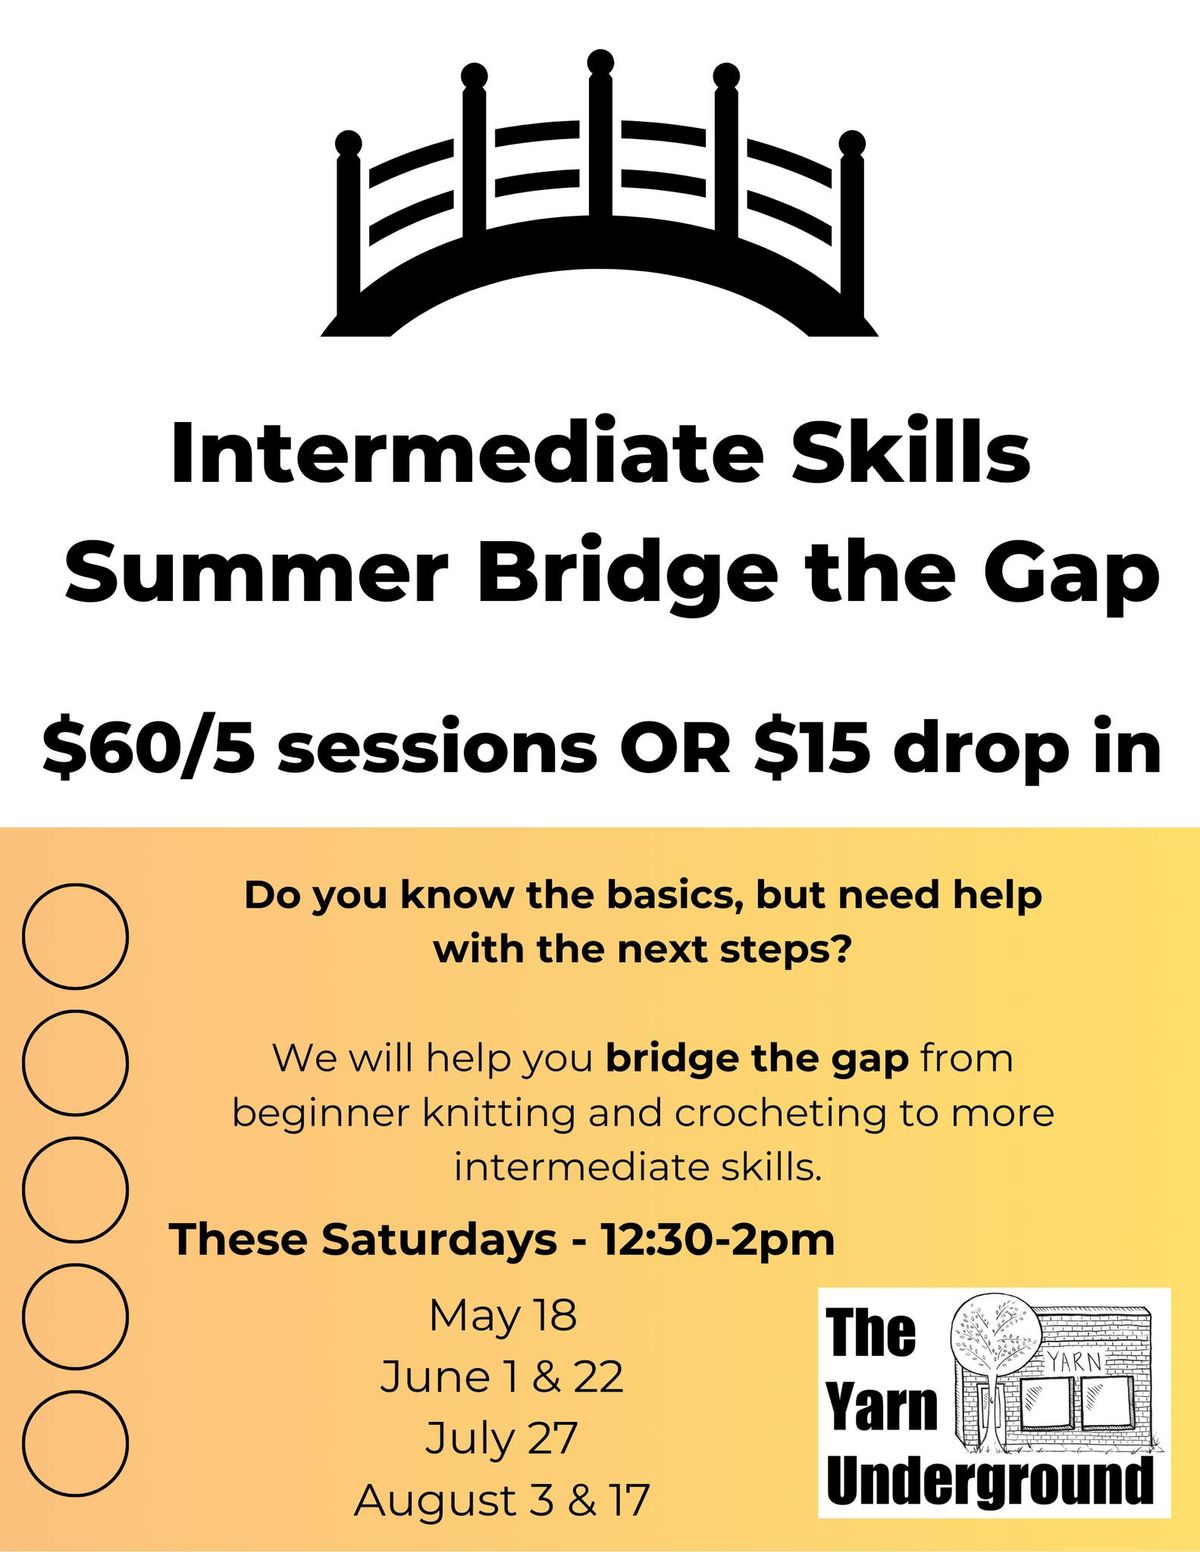 Intermediate Skills - Bridge the Gap Class August 17